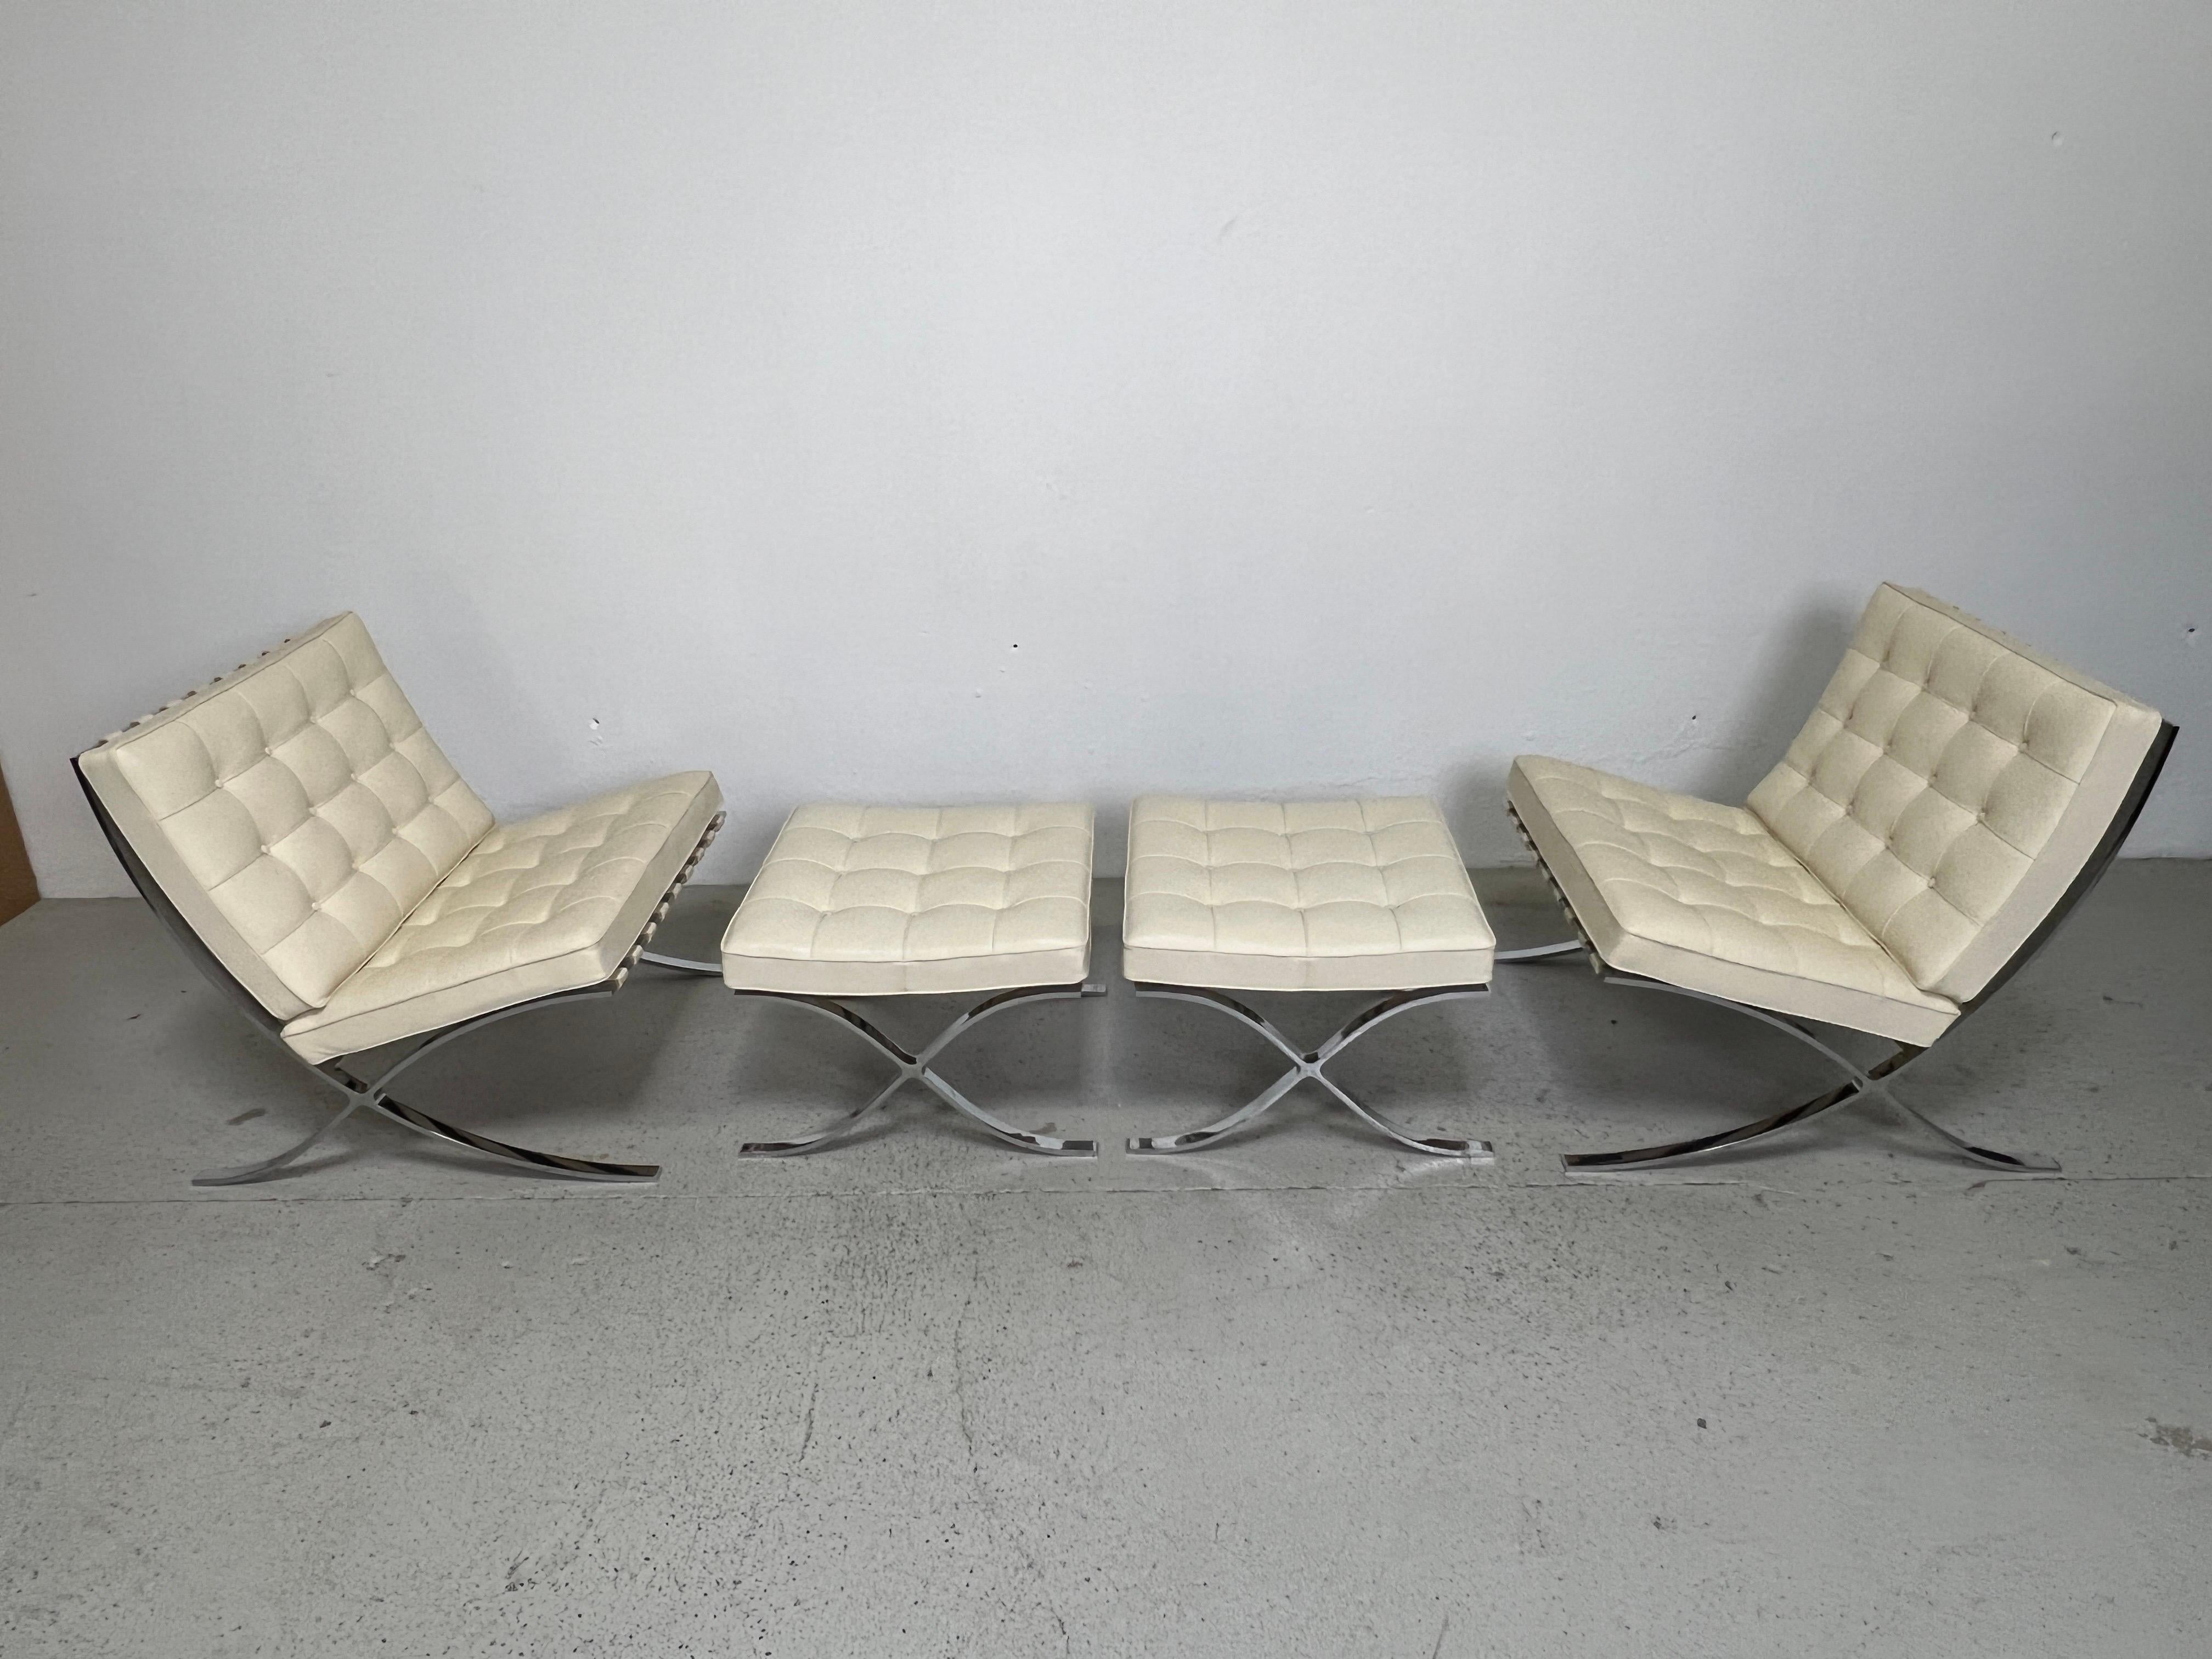 Paire de chaises et d'ottomans Barcelona assortis, conçus par Mies van der Rohe pour Knoll. Cet ensemble des années 2000 est en cuir crème très doux. 